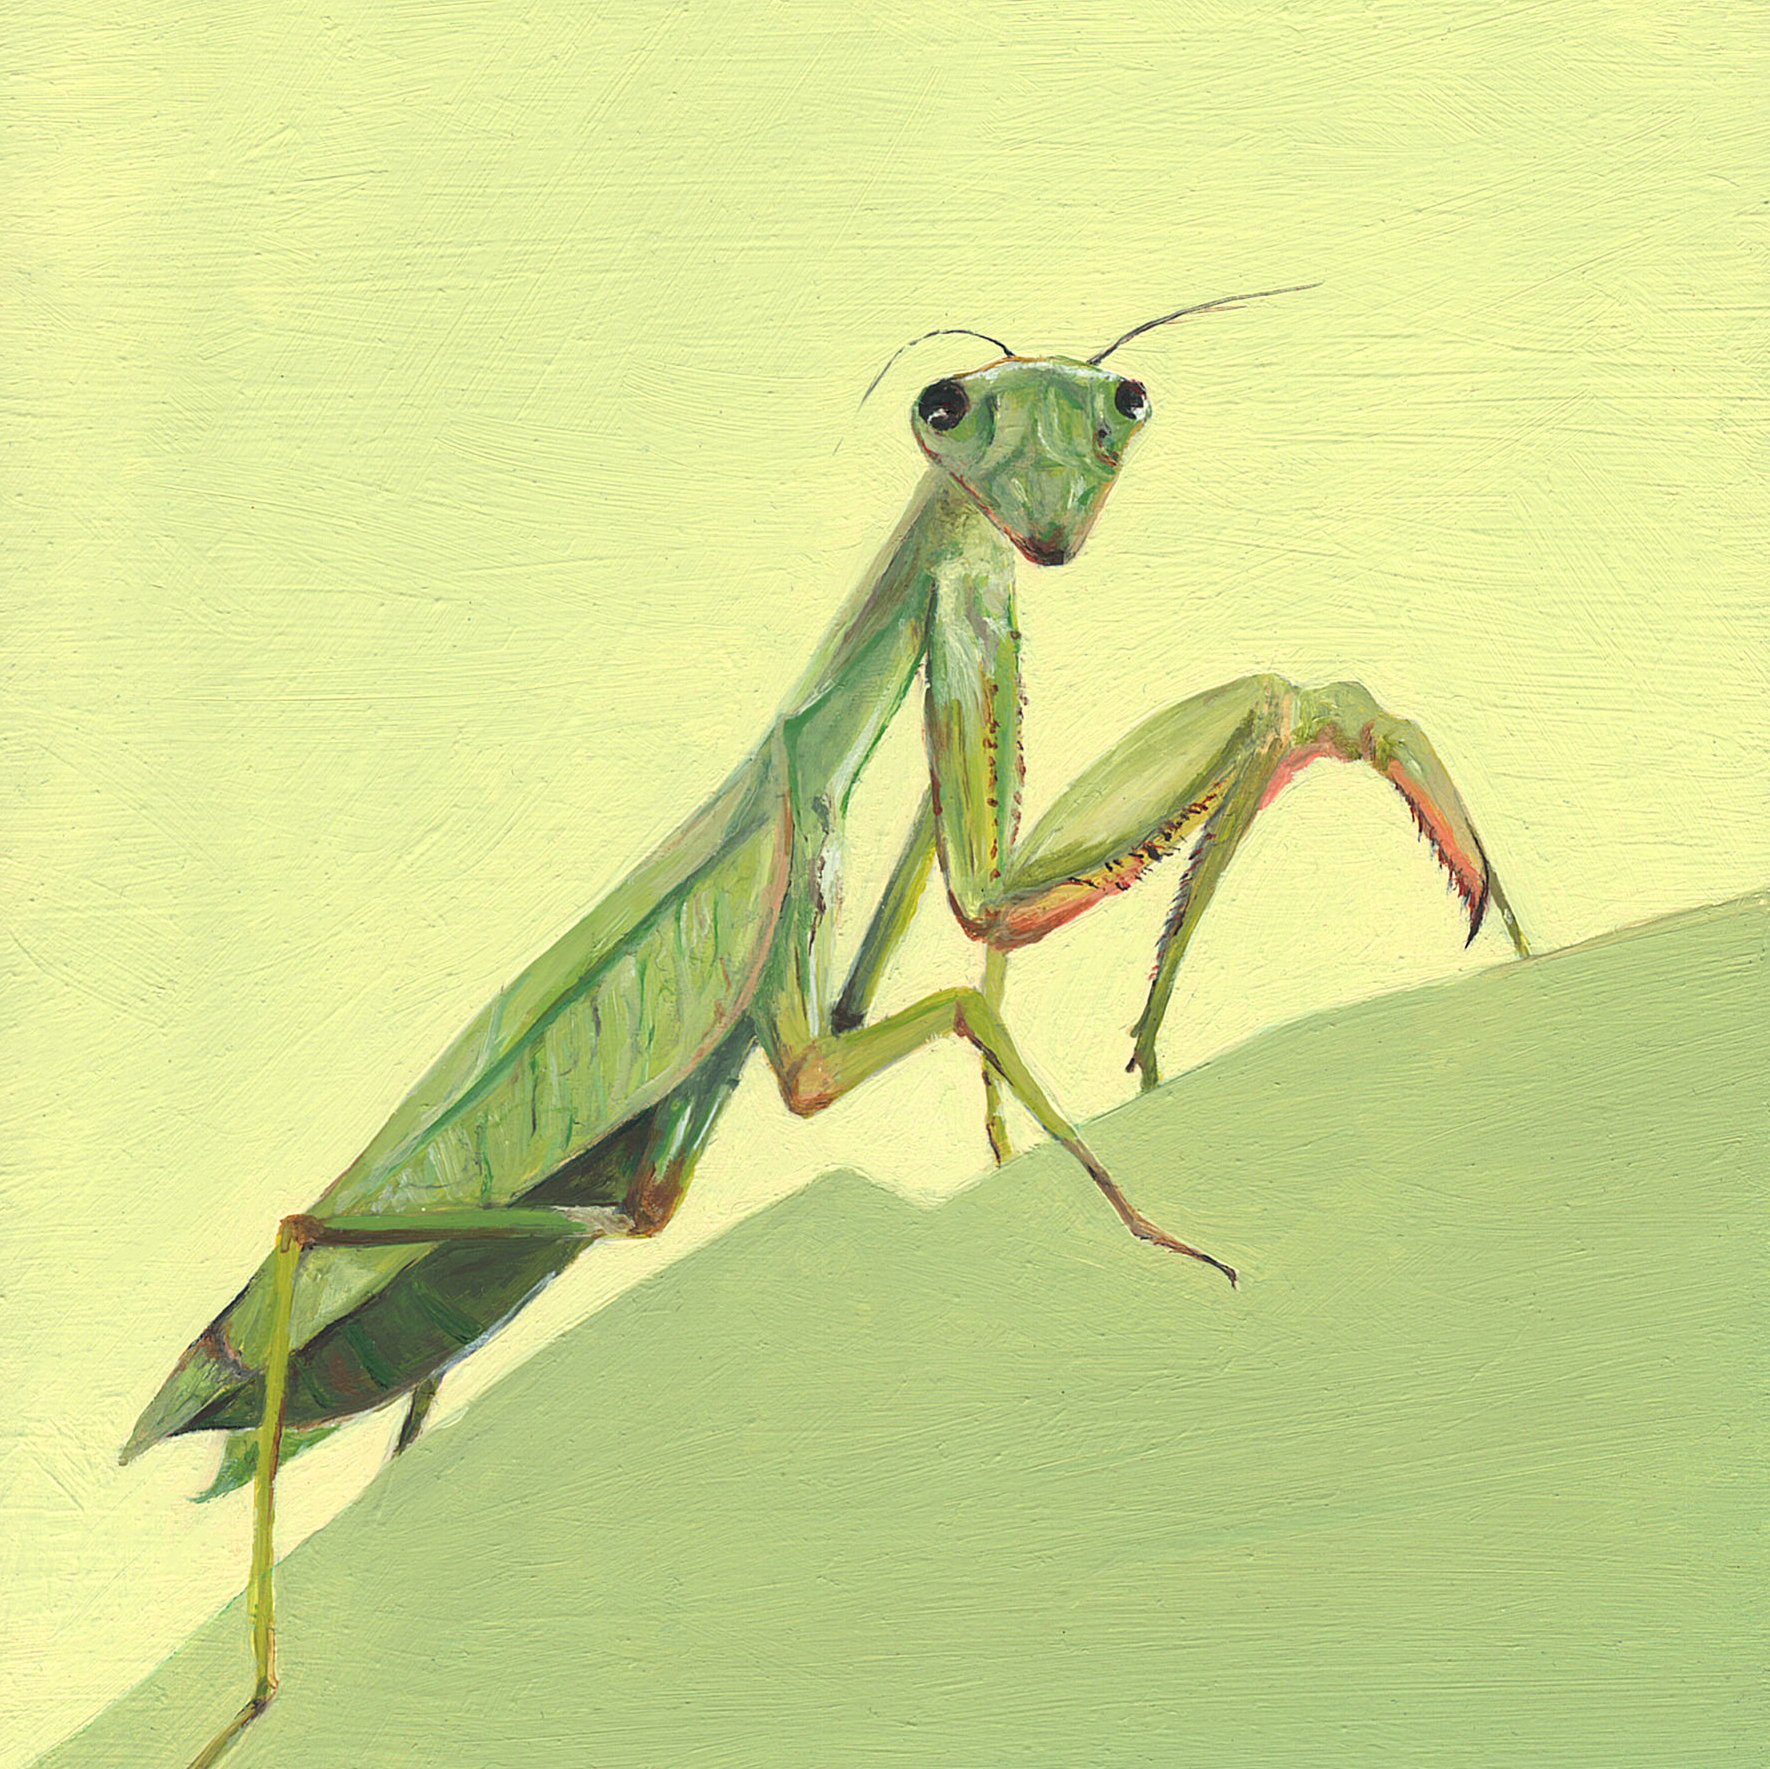 praying mantis.jpg